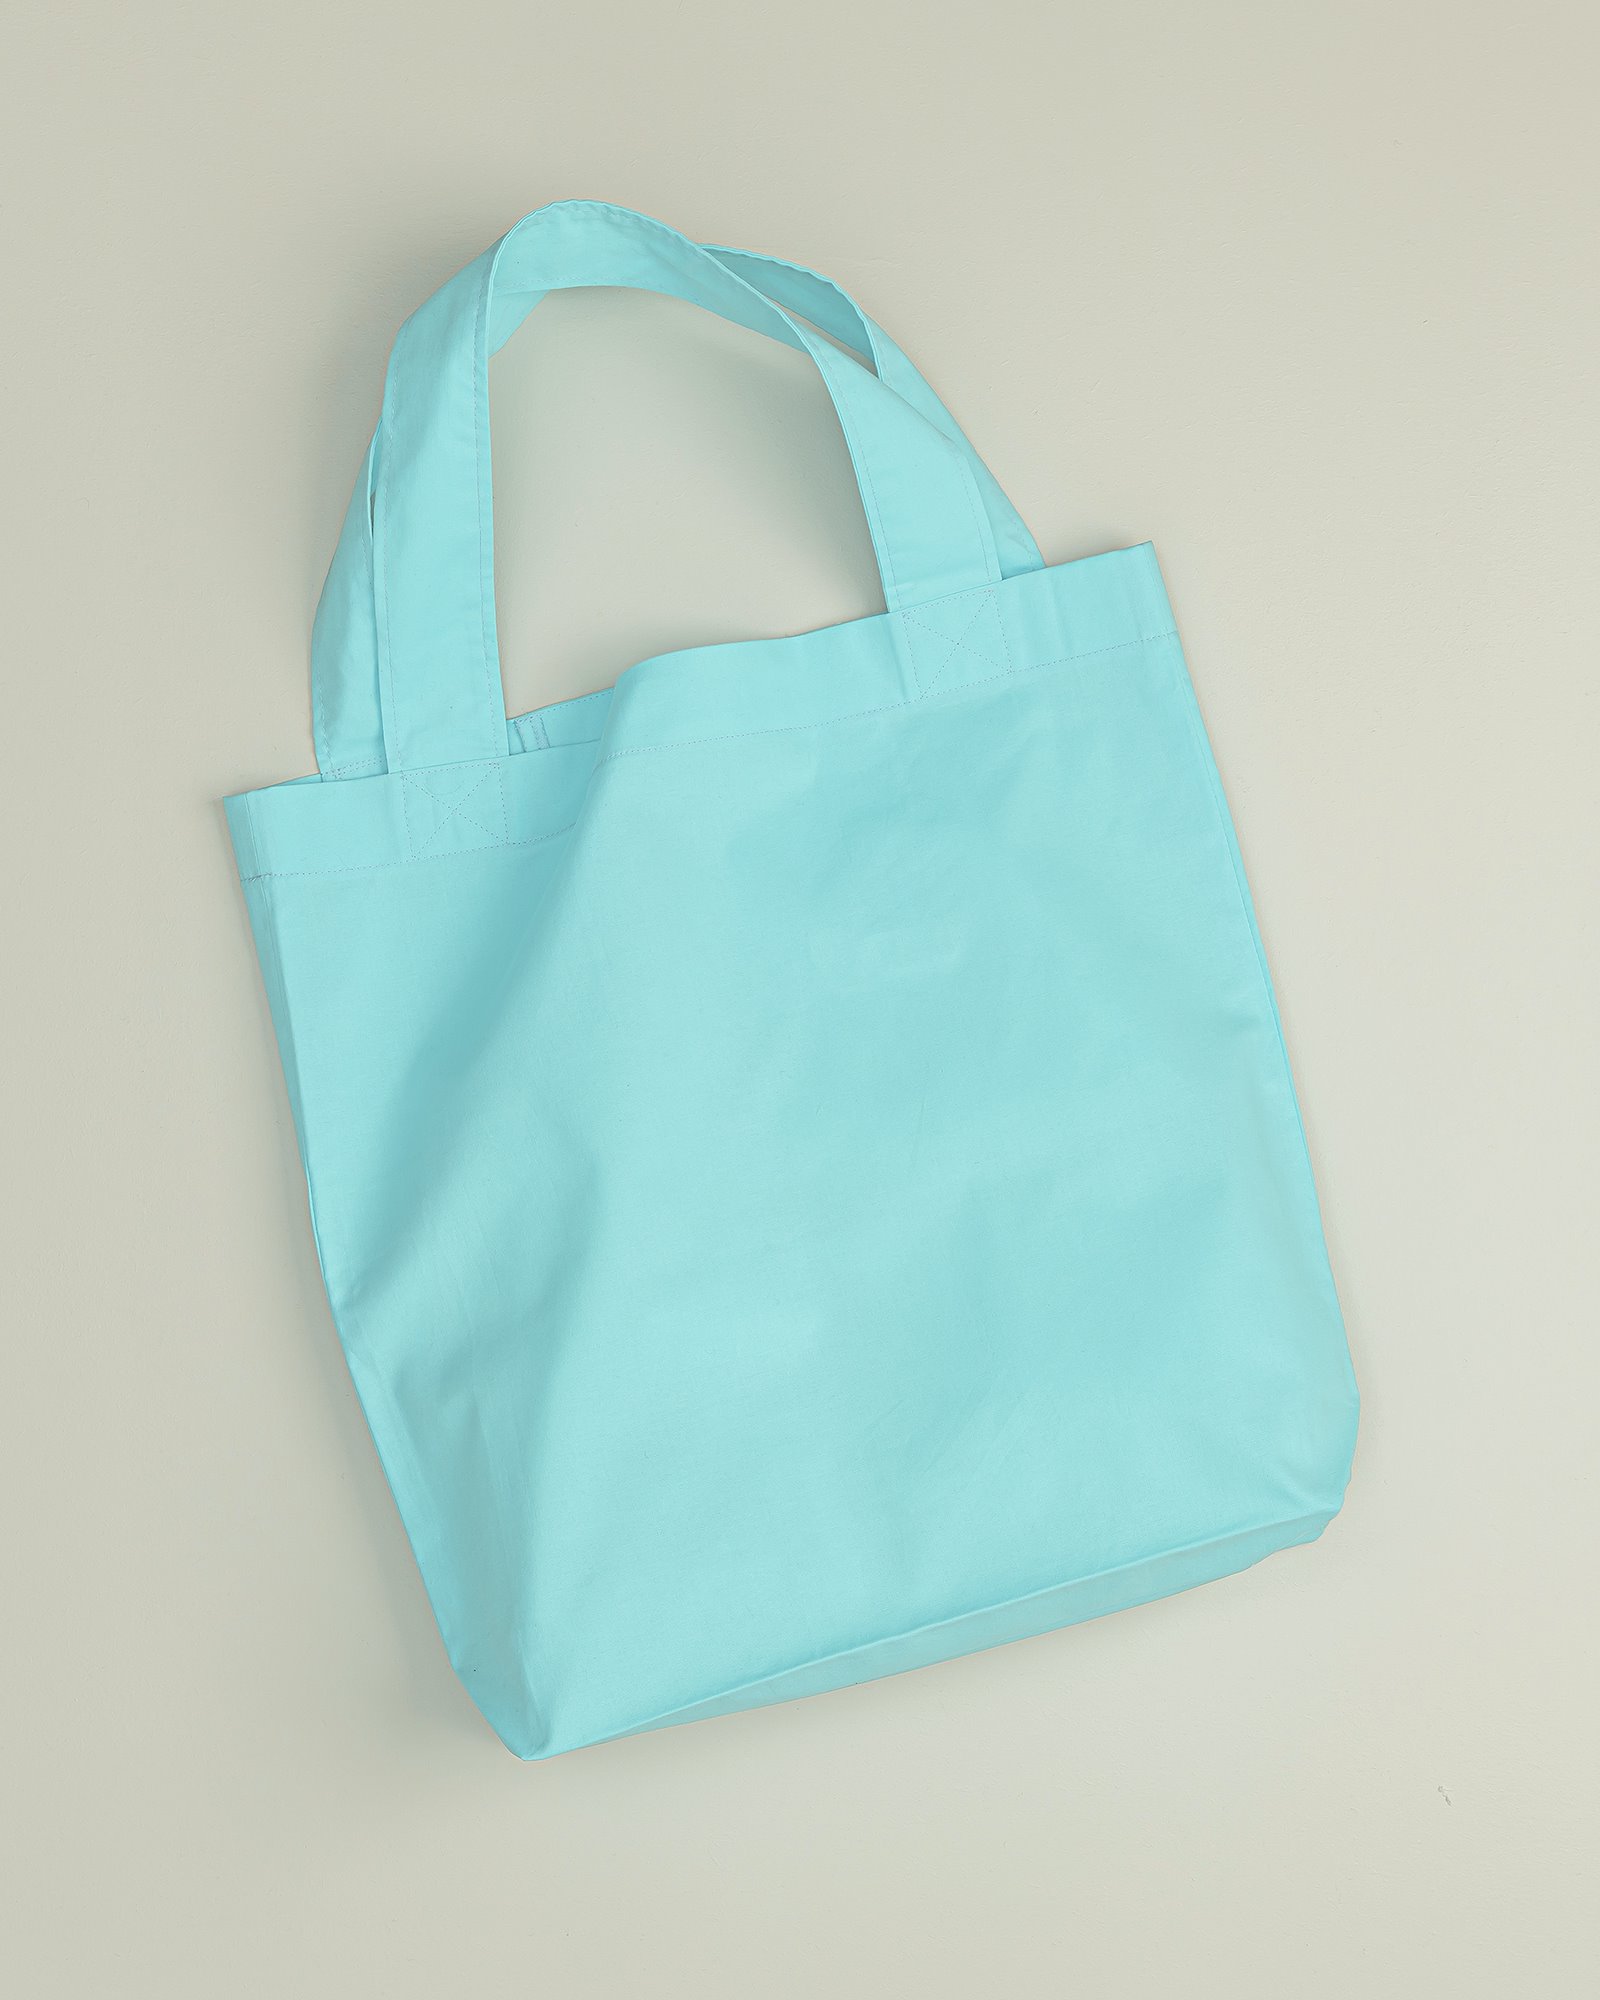 Free sewing pattern: Shopping bag/ Tote bag DIY7004_image.jpg